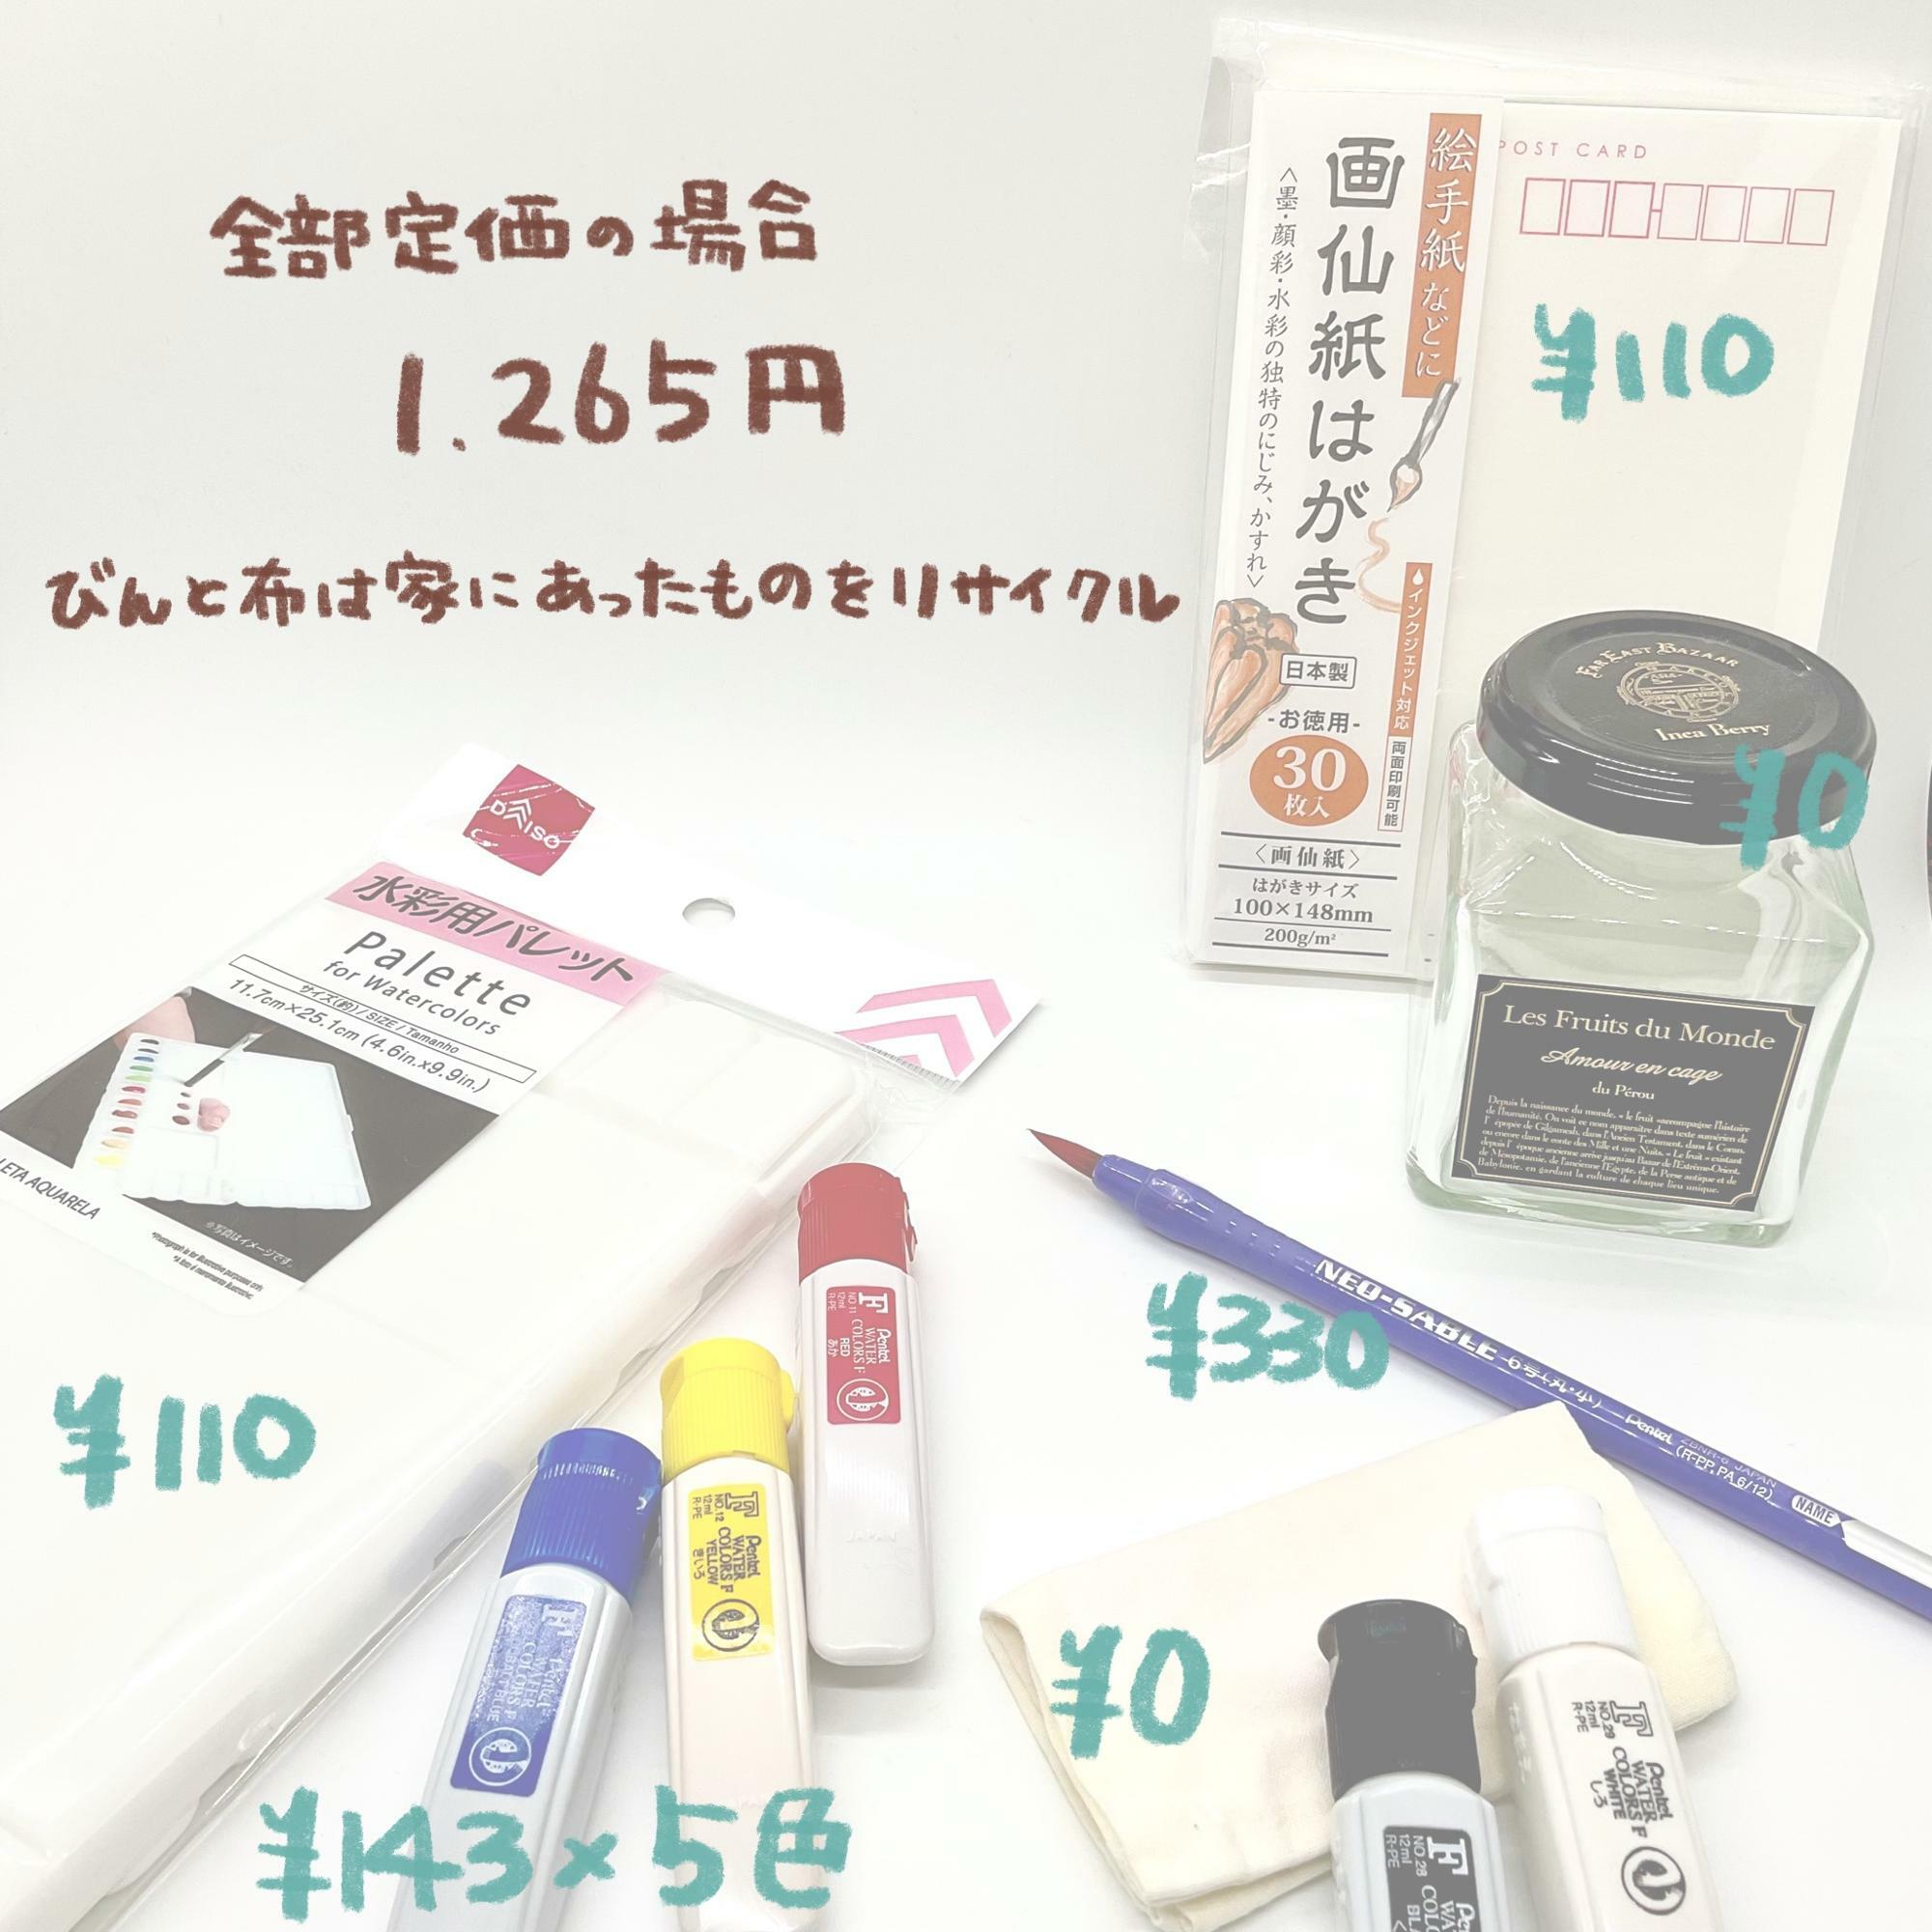 筆は100円ショップの筆でもOK。絵の具も同じ物がDAISOで1色110円で購入できました。どちらもDAISOで買った場合は880円で一式揃いますね…！